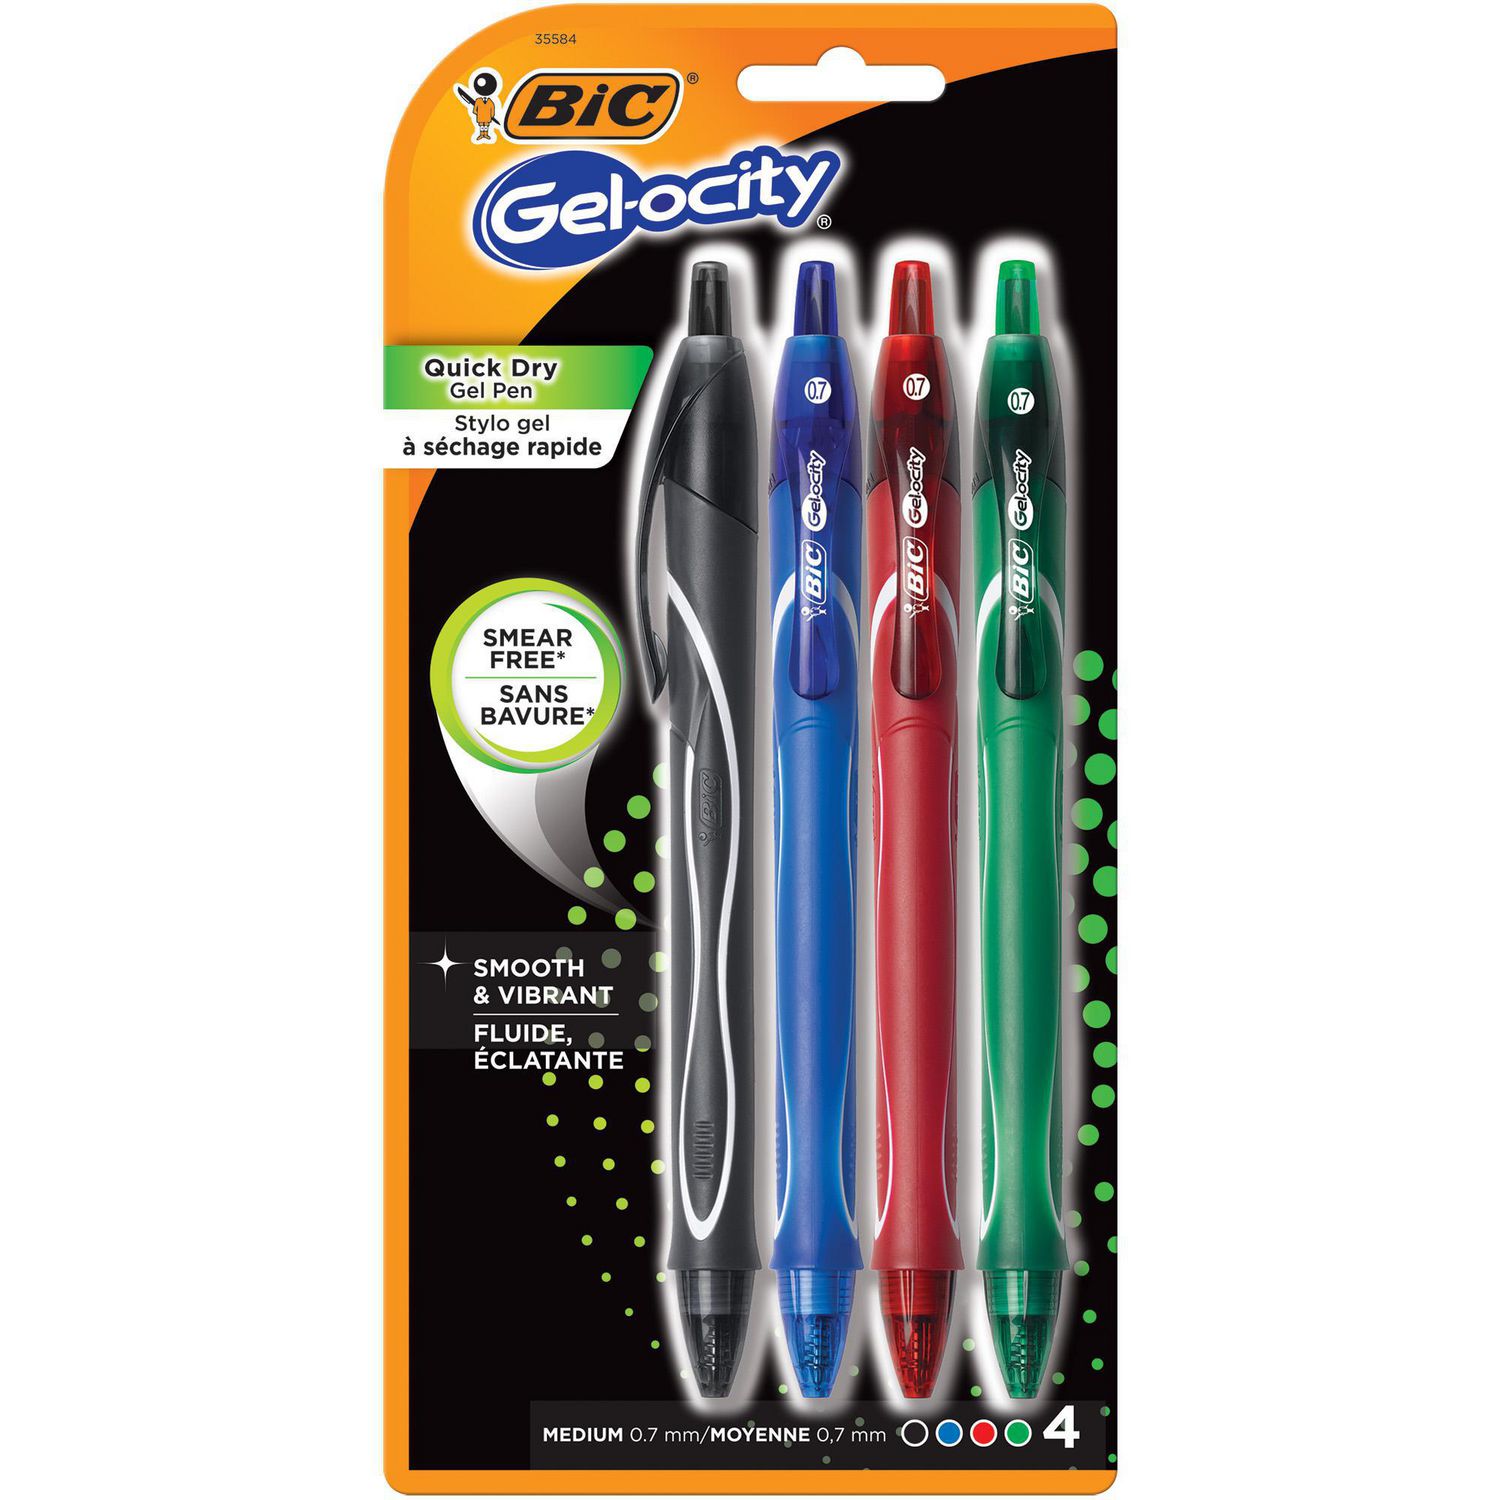 Medium Point Retractable Gel Pen 1 Gel-Ocity Quick Dry Gel Pens 0.7mm Assorted Colors 12-Count 